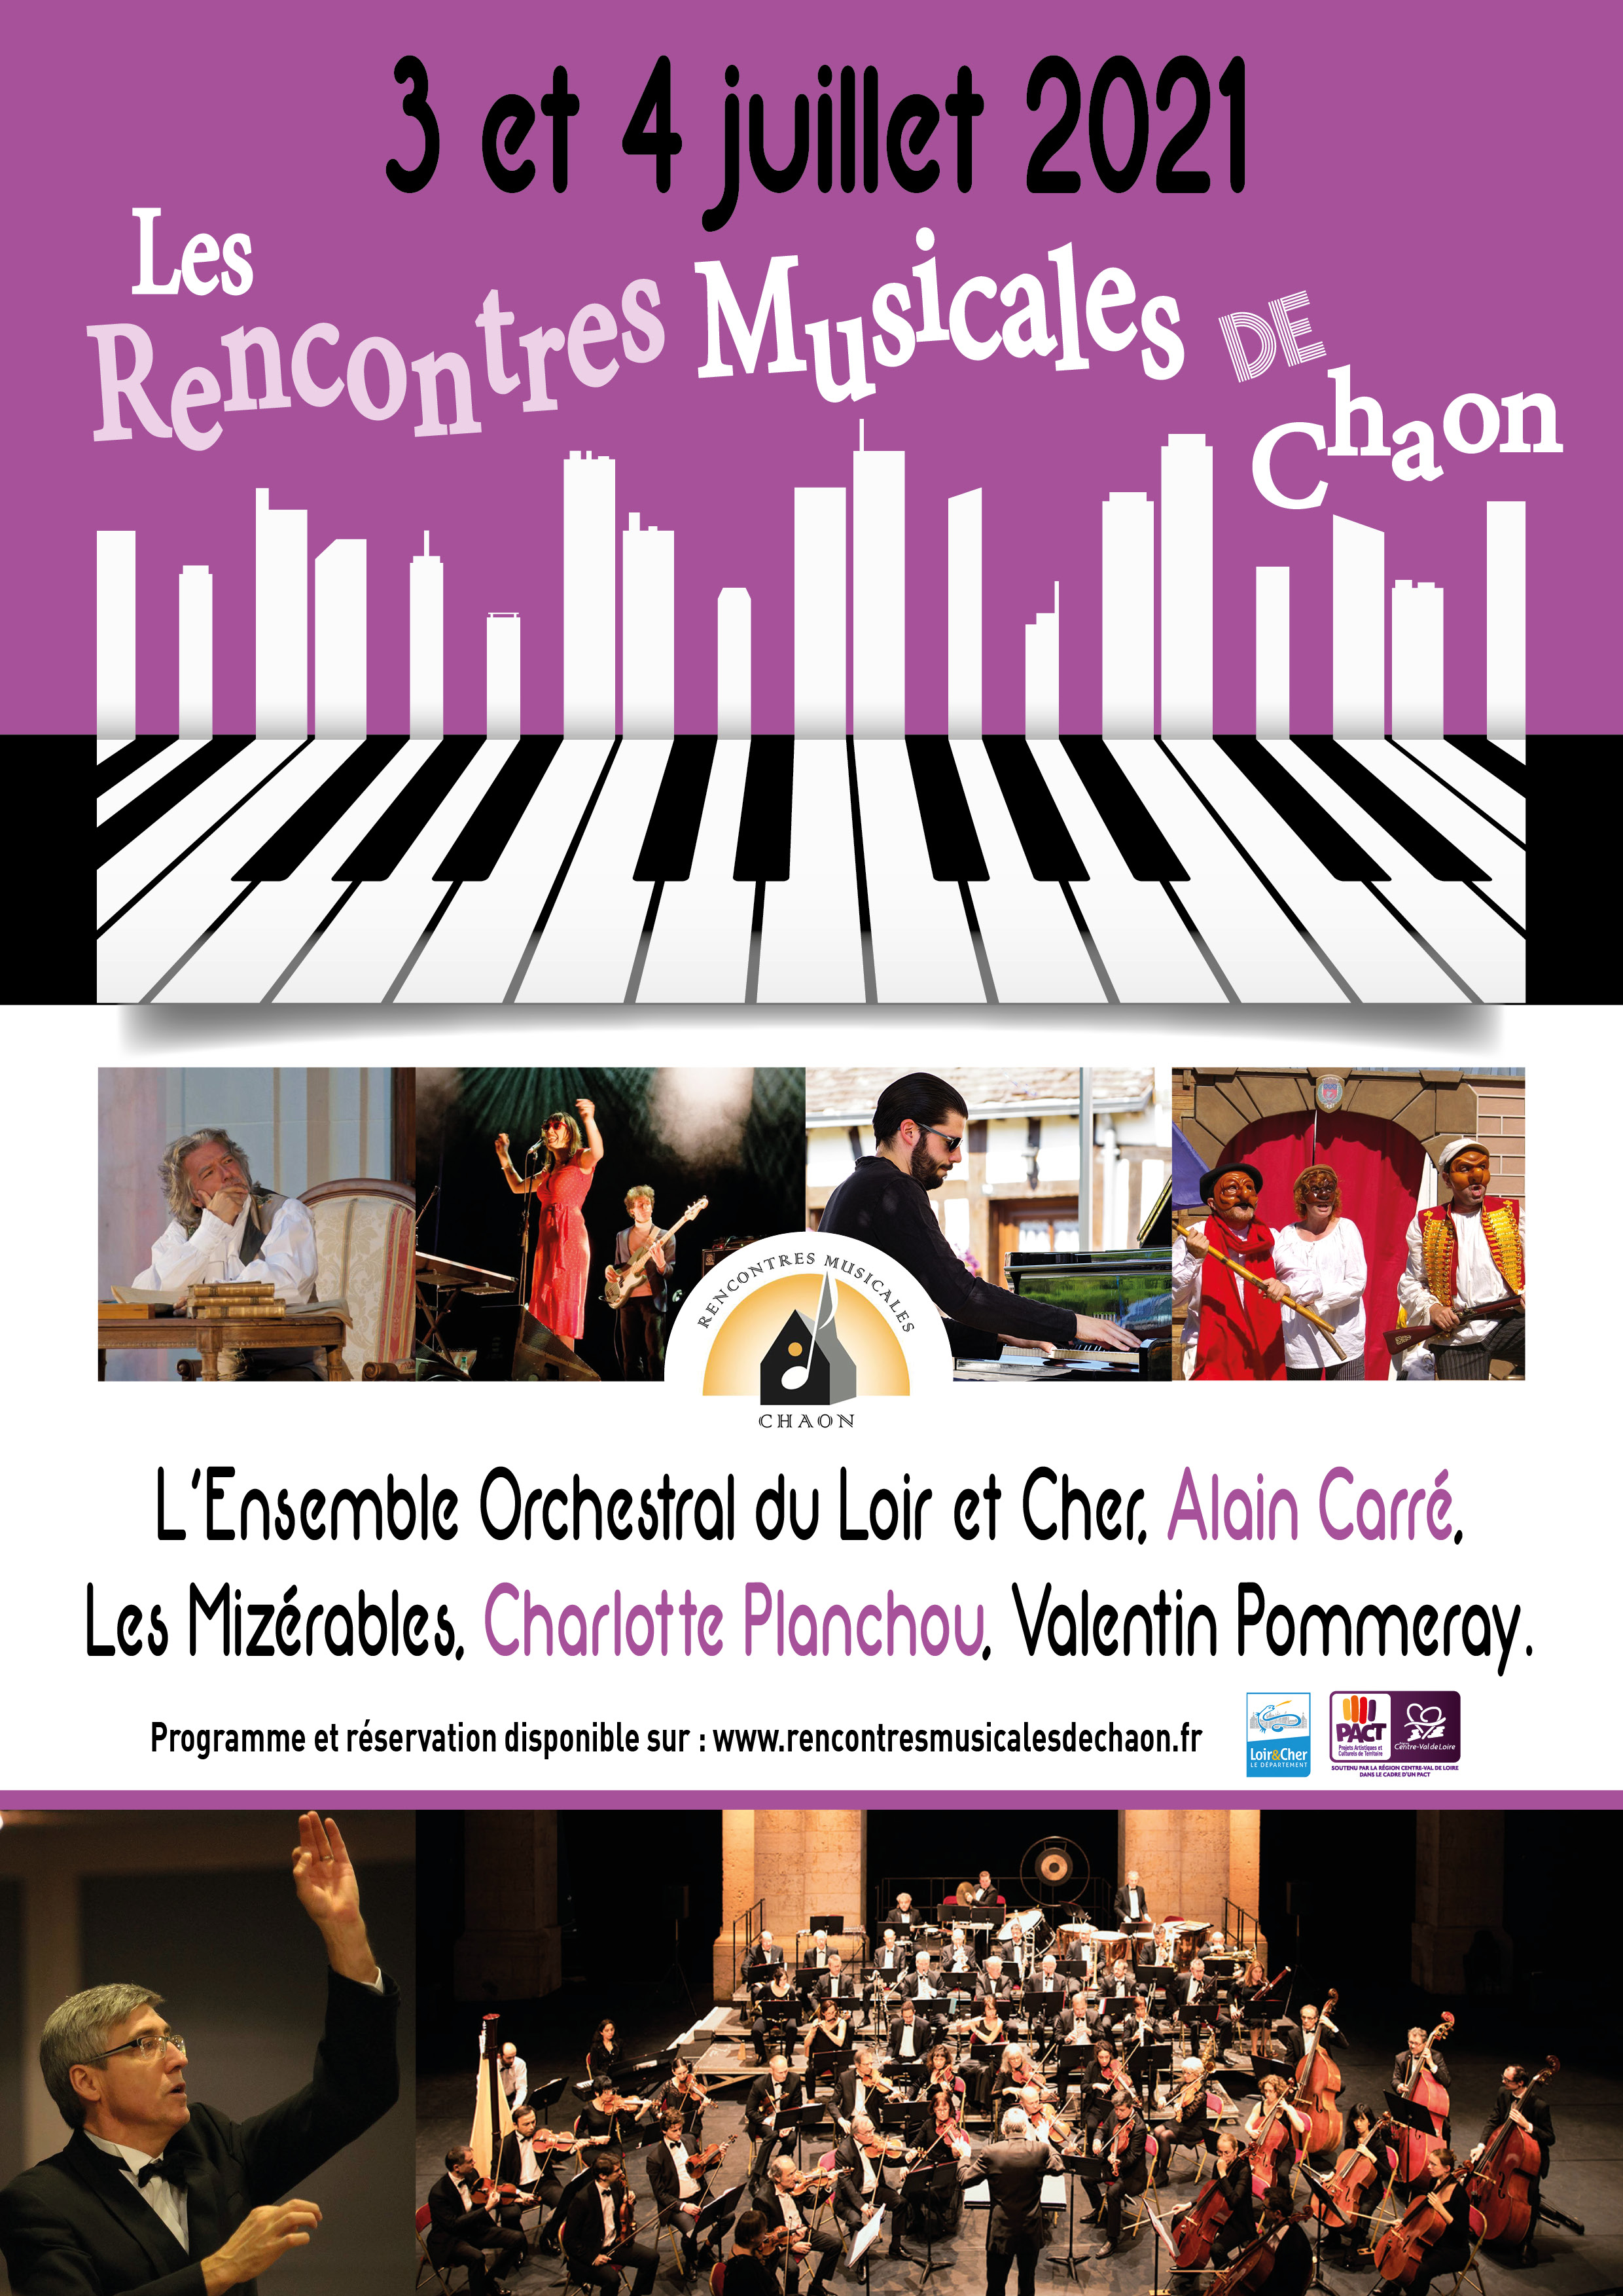 RENCONTRES MUSICALES DE CHAON